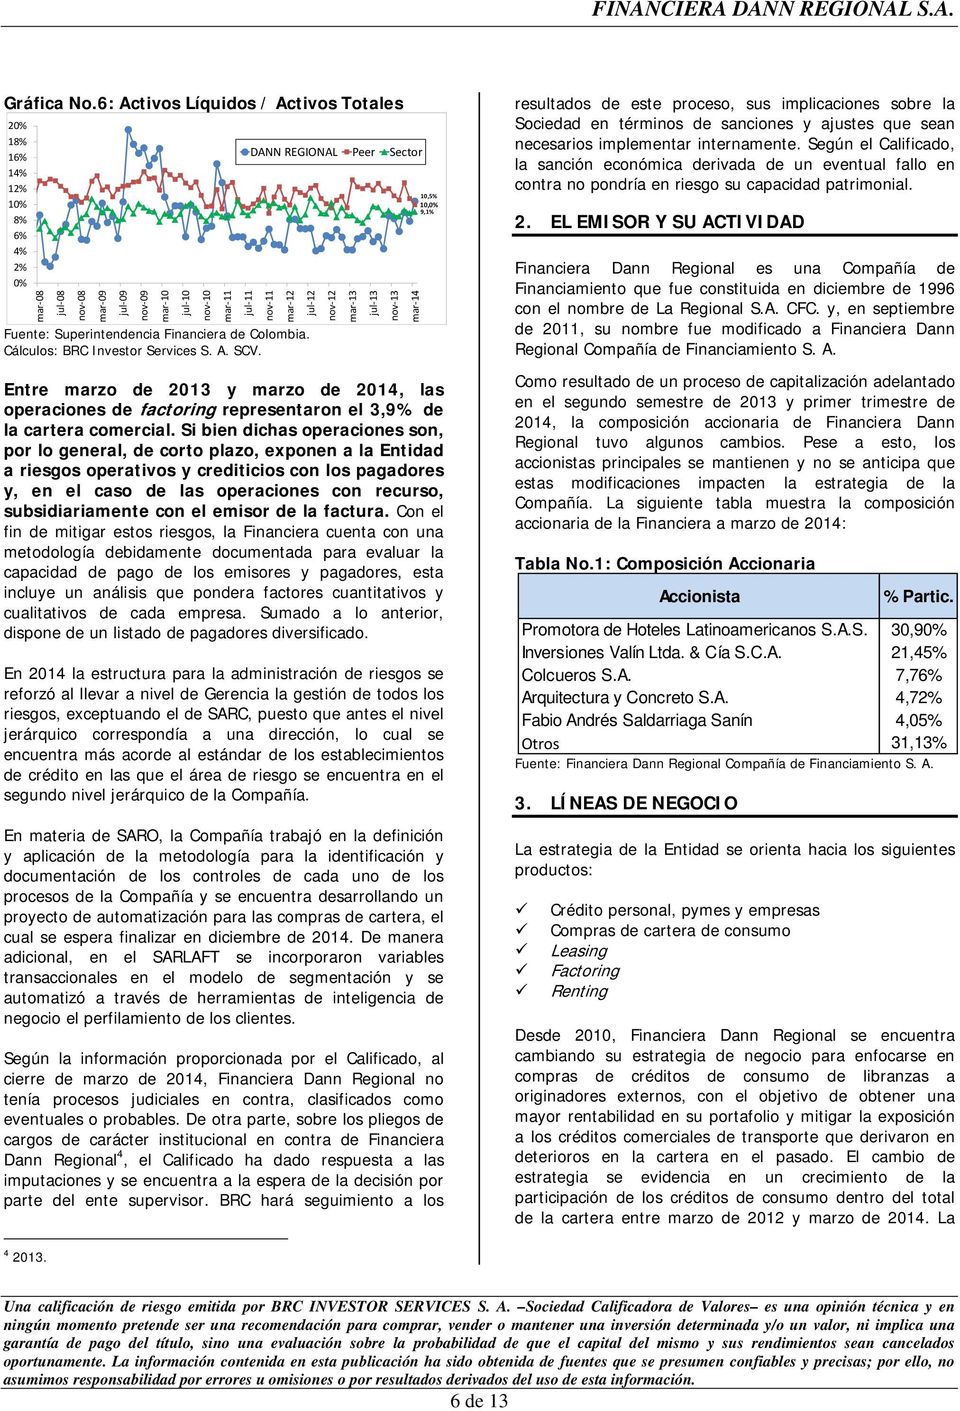 13 mar 14 Fuente: Superintendencia Financiera de Colombia. DANN REGIONAL Peer Sector Entre marzo de 2013 y marzo de 2014, las operaciones de factoring representaron el 3,9% de la cartera comercial.